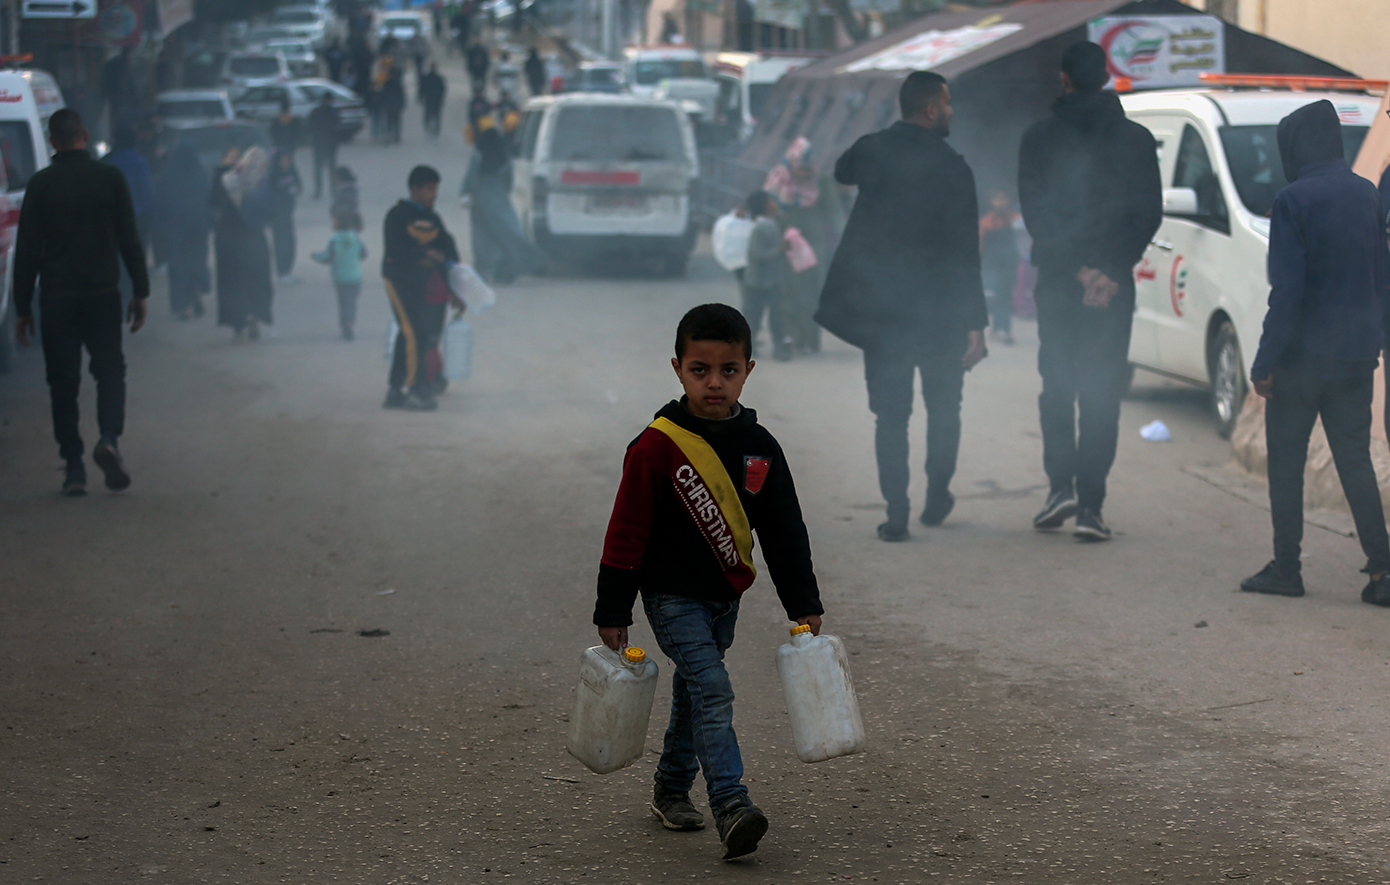 Η Ουάσινγκτον καταθέτει προς ψήφιση στο Συμβούλιο Ασφαλείας του ΟΗΕ σχέδιο που καλεί σε άμεση εκεχειρία στη Γάζα